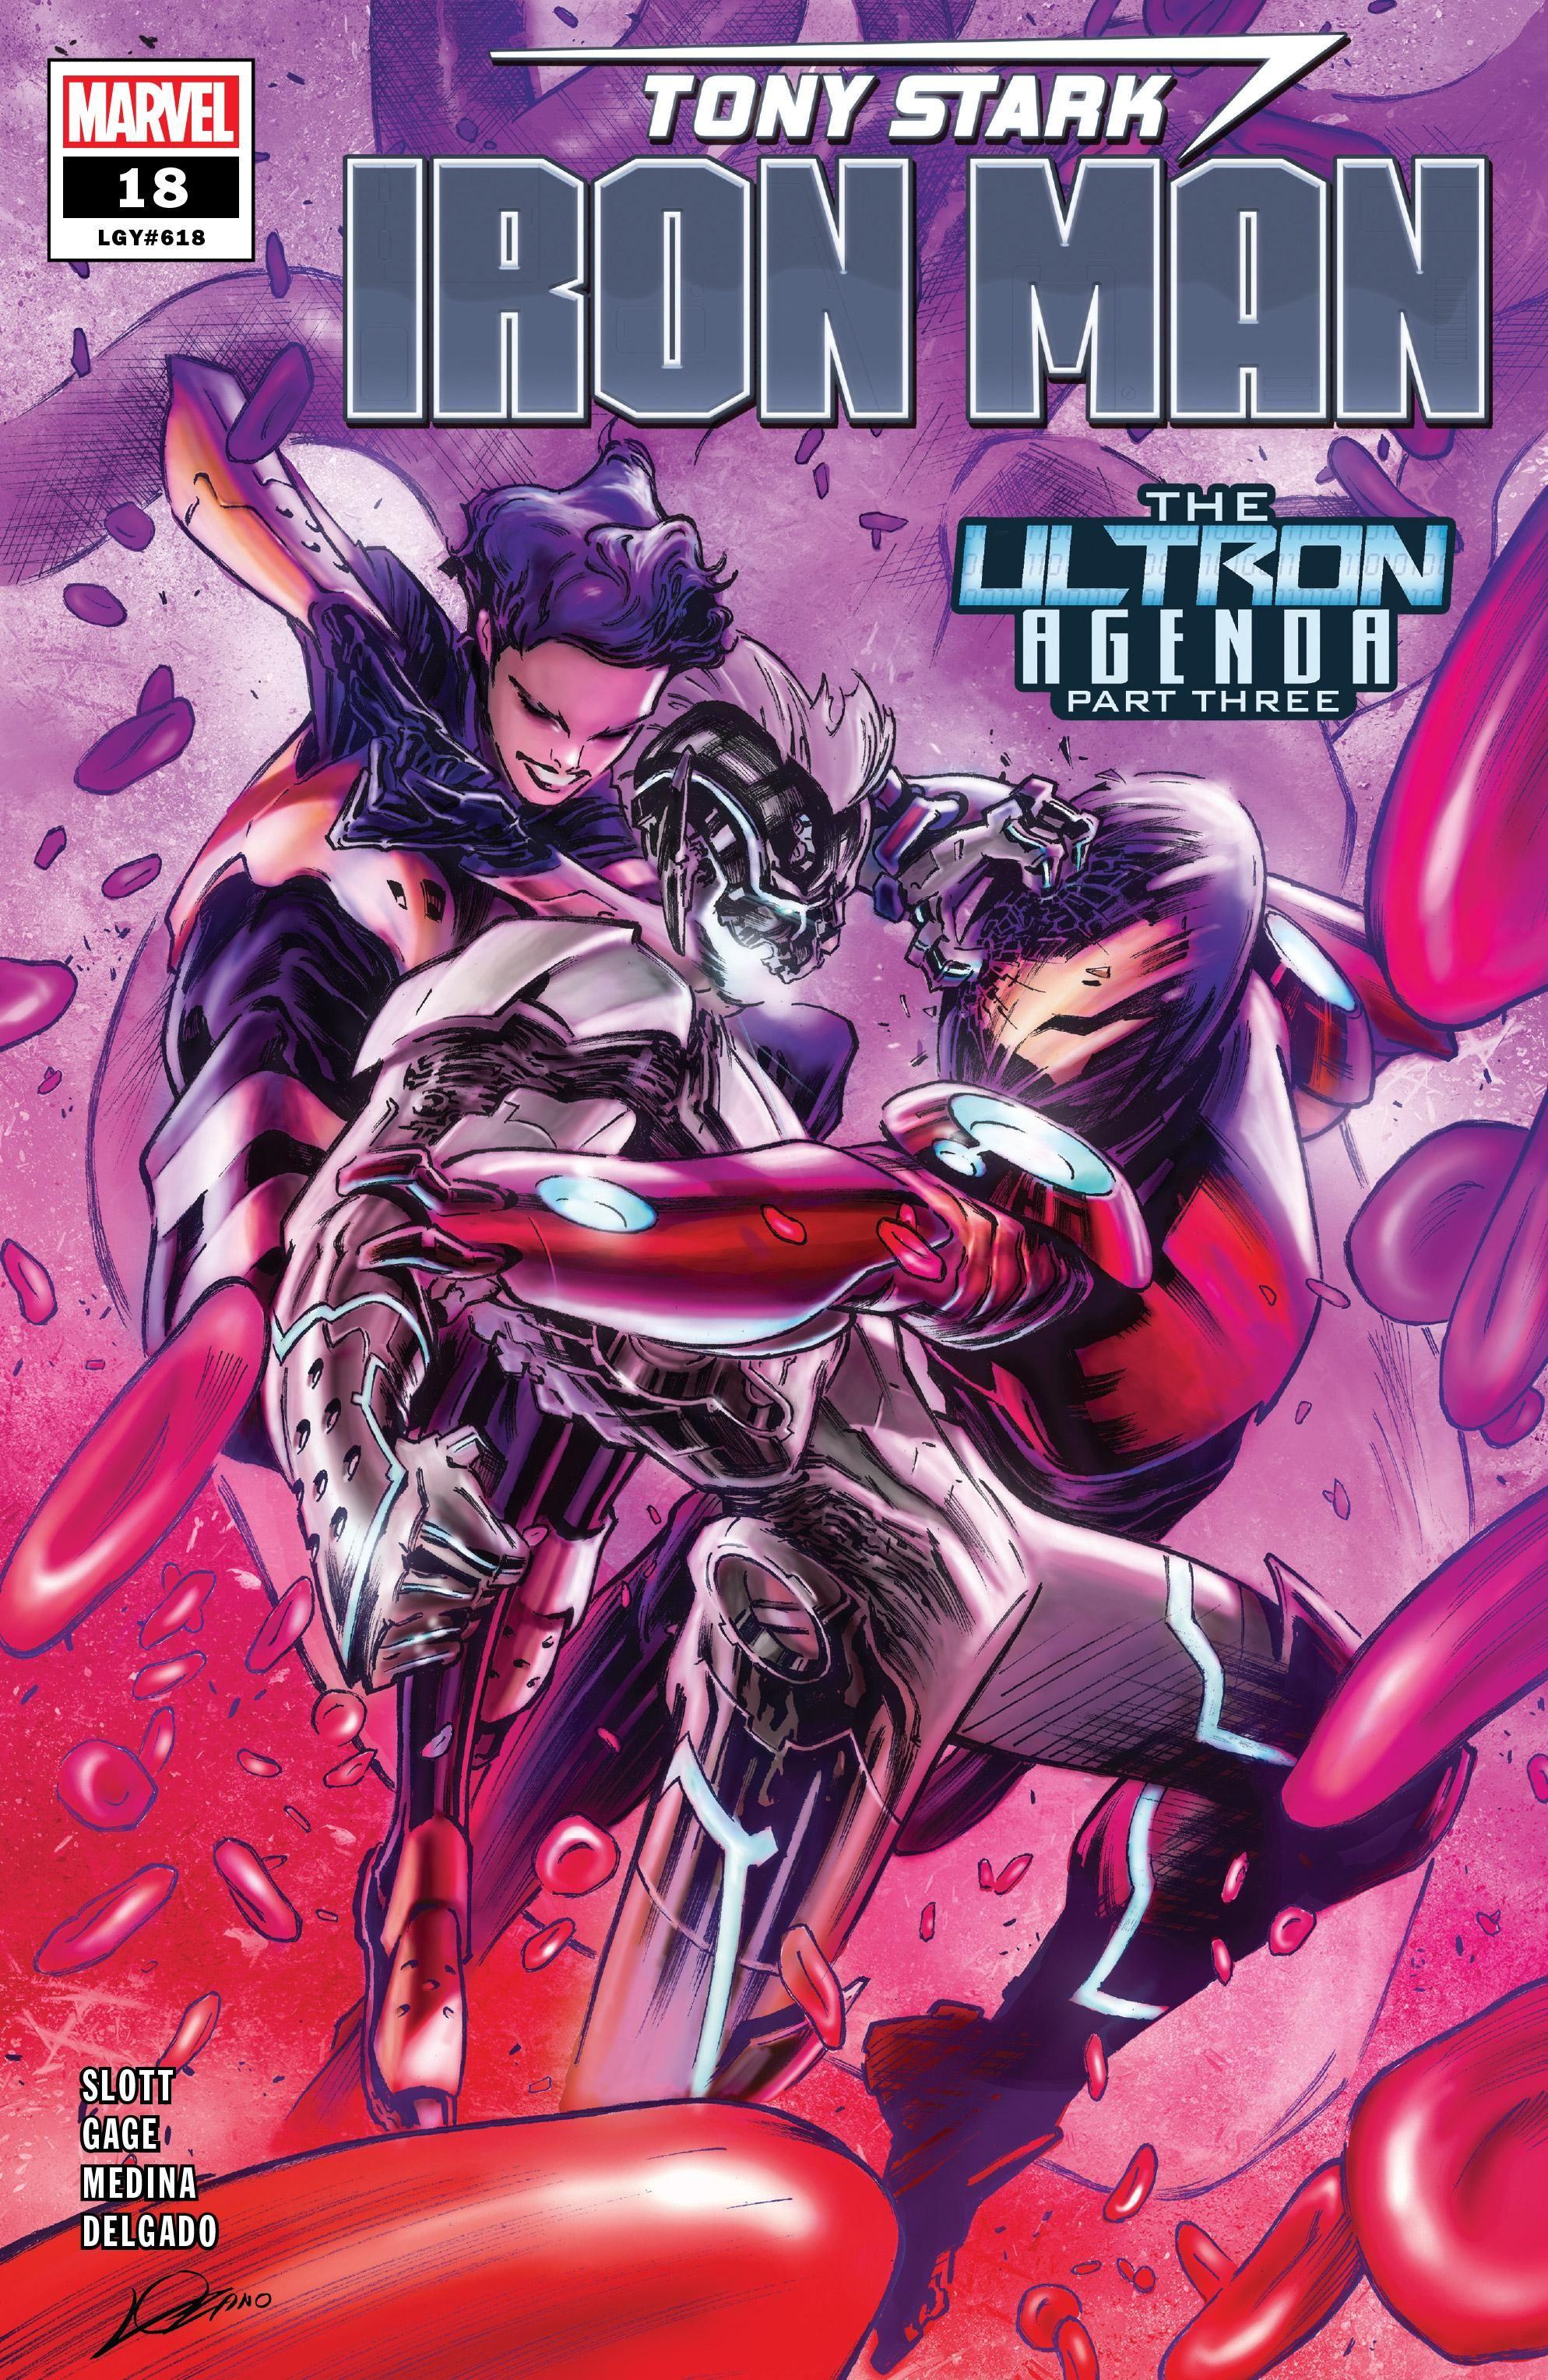 Tony Stark: Iron Man Vol. 1 #18